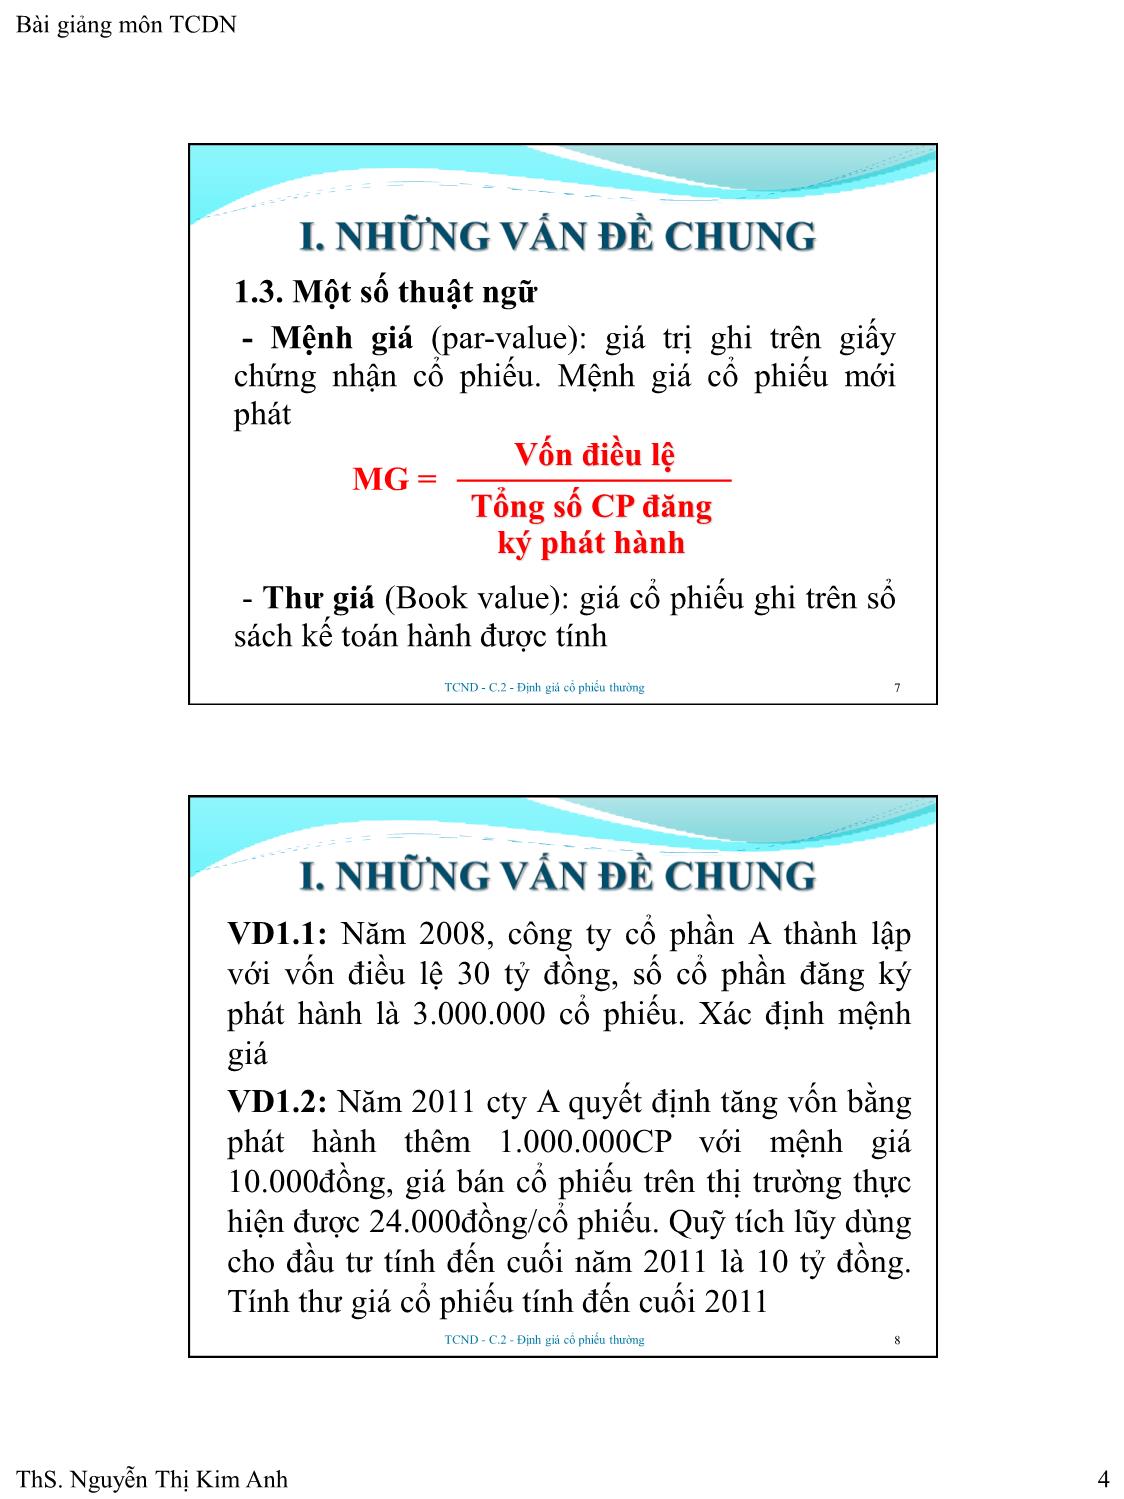 Bài giảng Tài chính doanh nghiệp - Chương 2: Định giá cổ phiếu thường - Nguyễn Thị Kim Anh trang 4